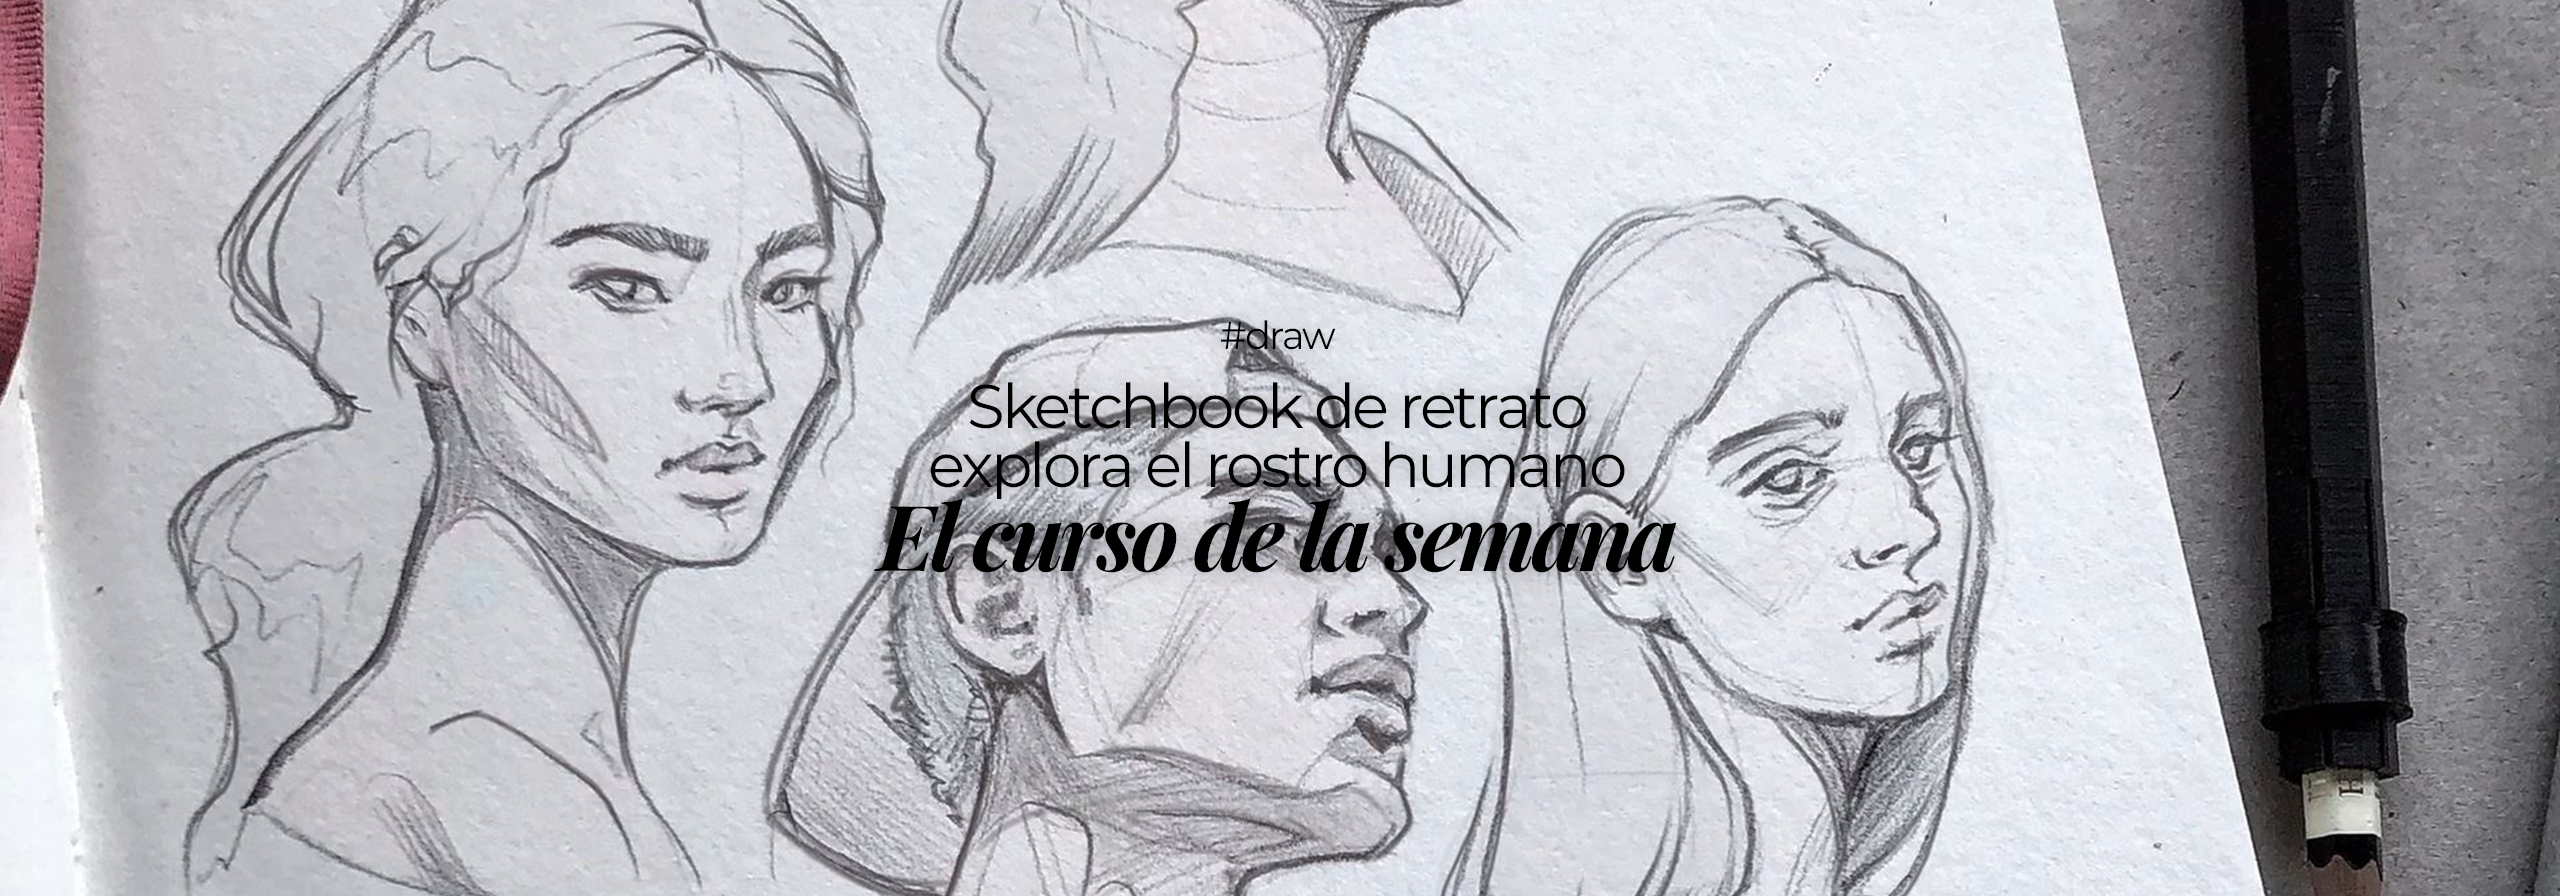 Curso Sketchbook de retrato: explora el rostro humano - Code Barcelona